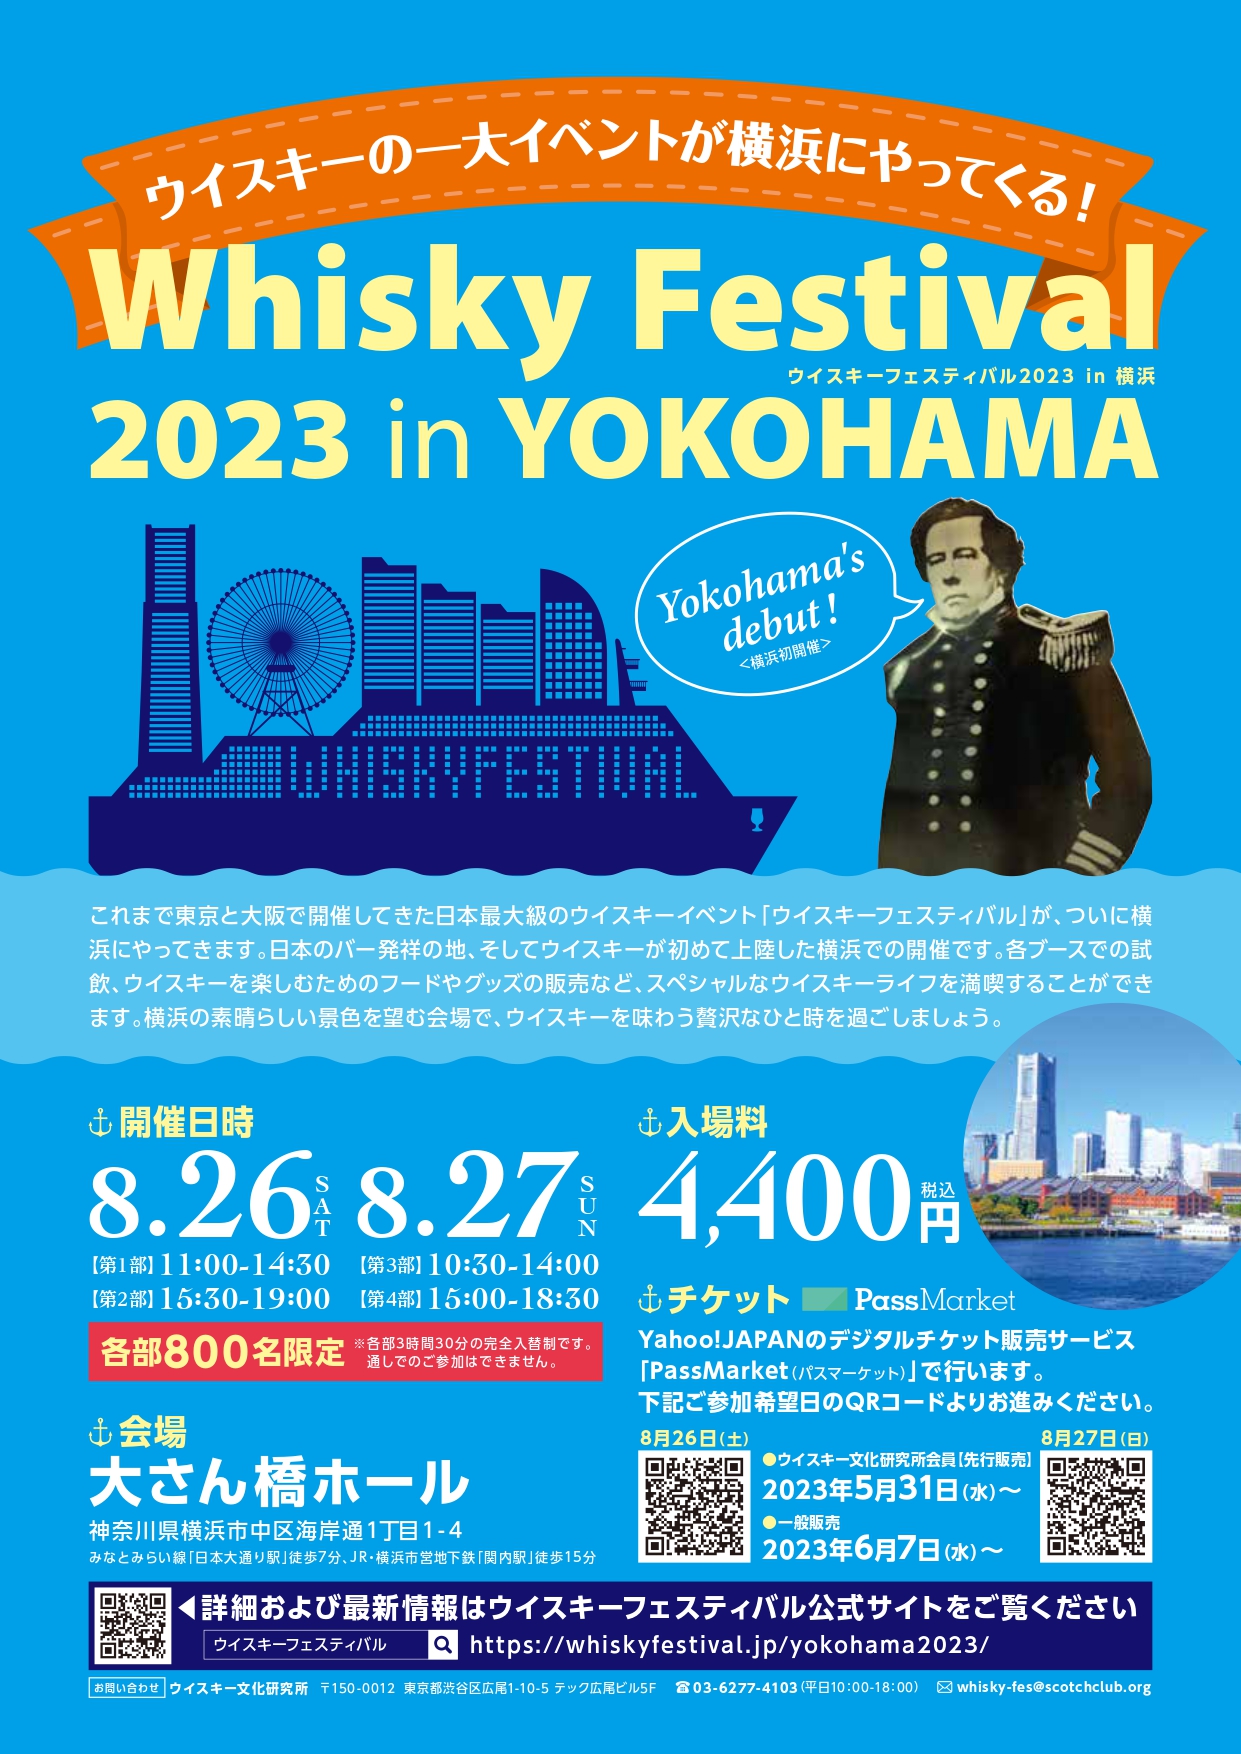 Whisky Festival 2023 in YOKOHAMA